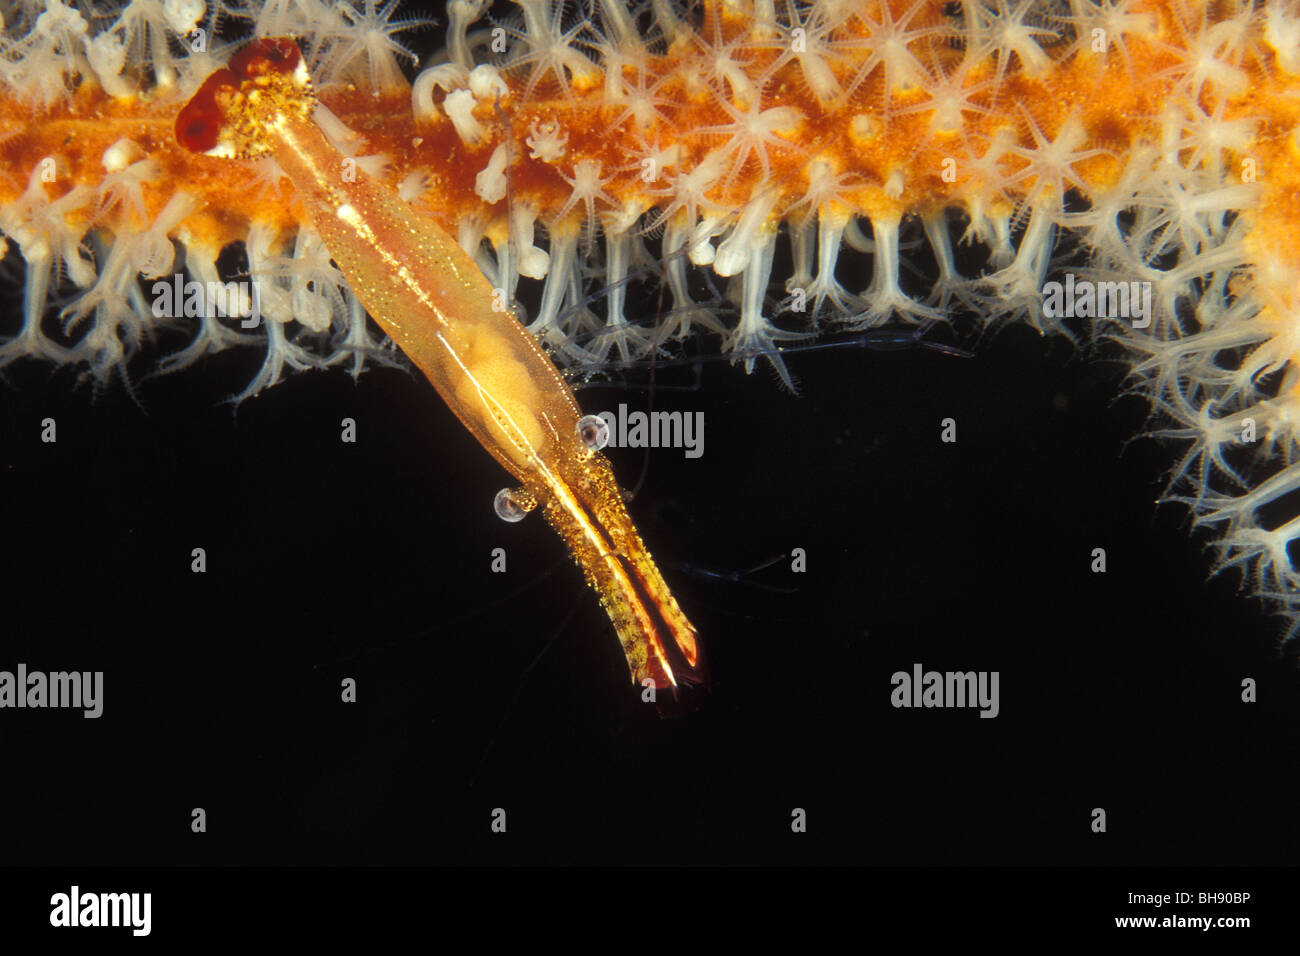 Crevette commensale sur d'éventails de mer, Periclimenes sp., Ari Atoll, Maldives, océan Indien Banque D'Images